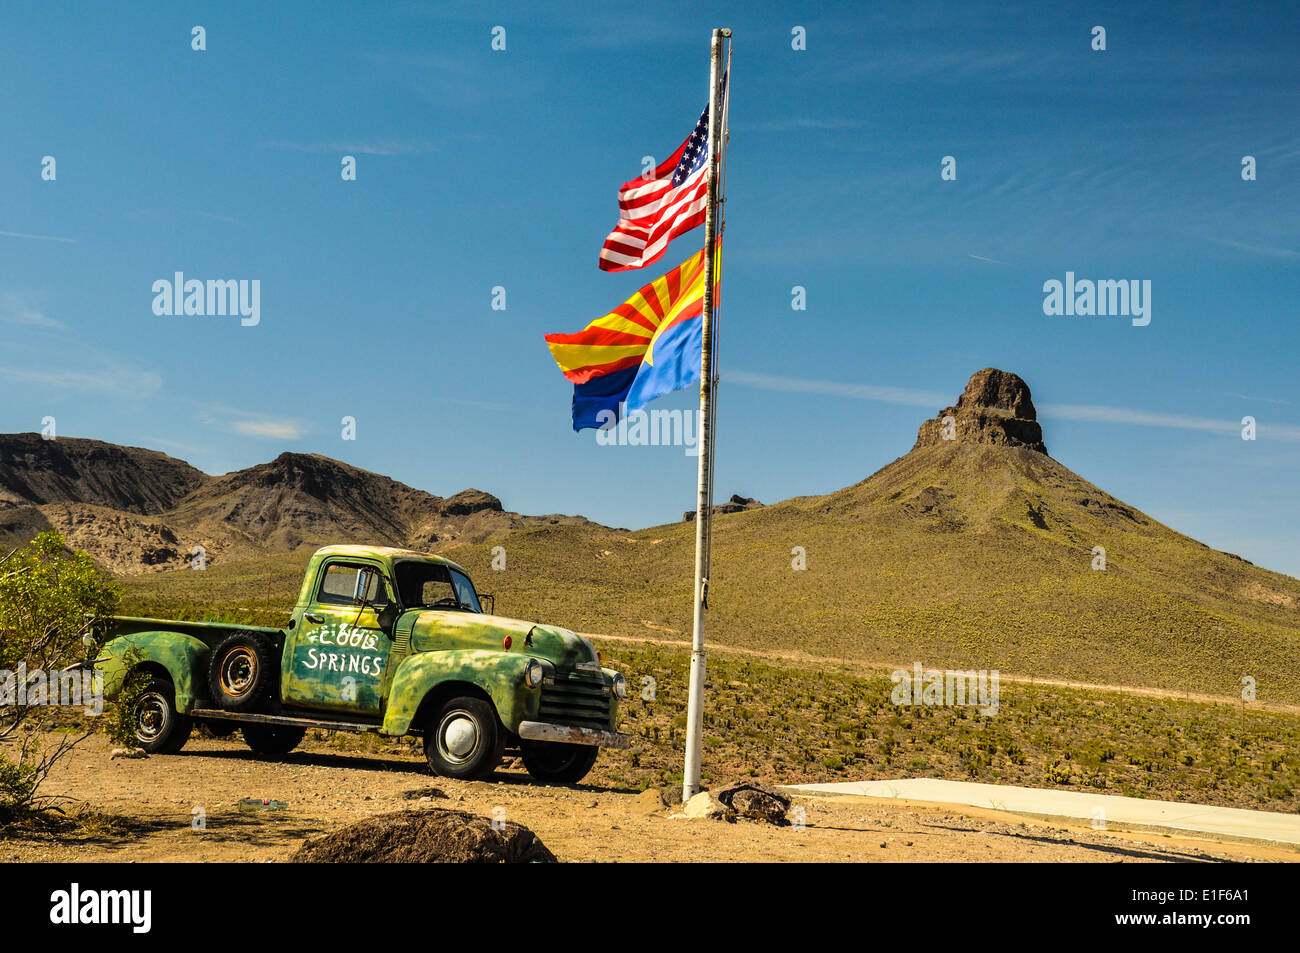 Auto d'epoca sul percorso 66 nel deserto di Mojave con nazionali e indicatori di stato Foto Stock